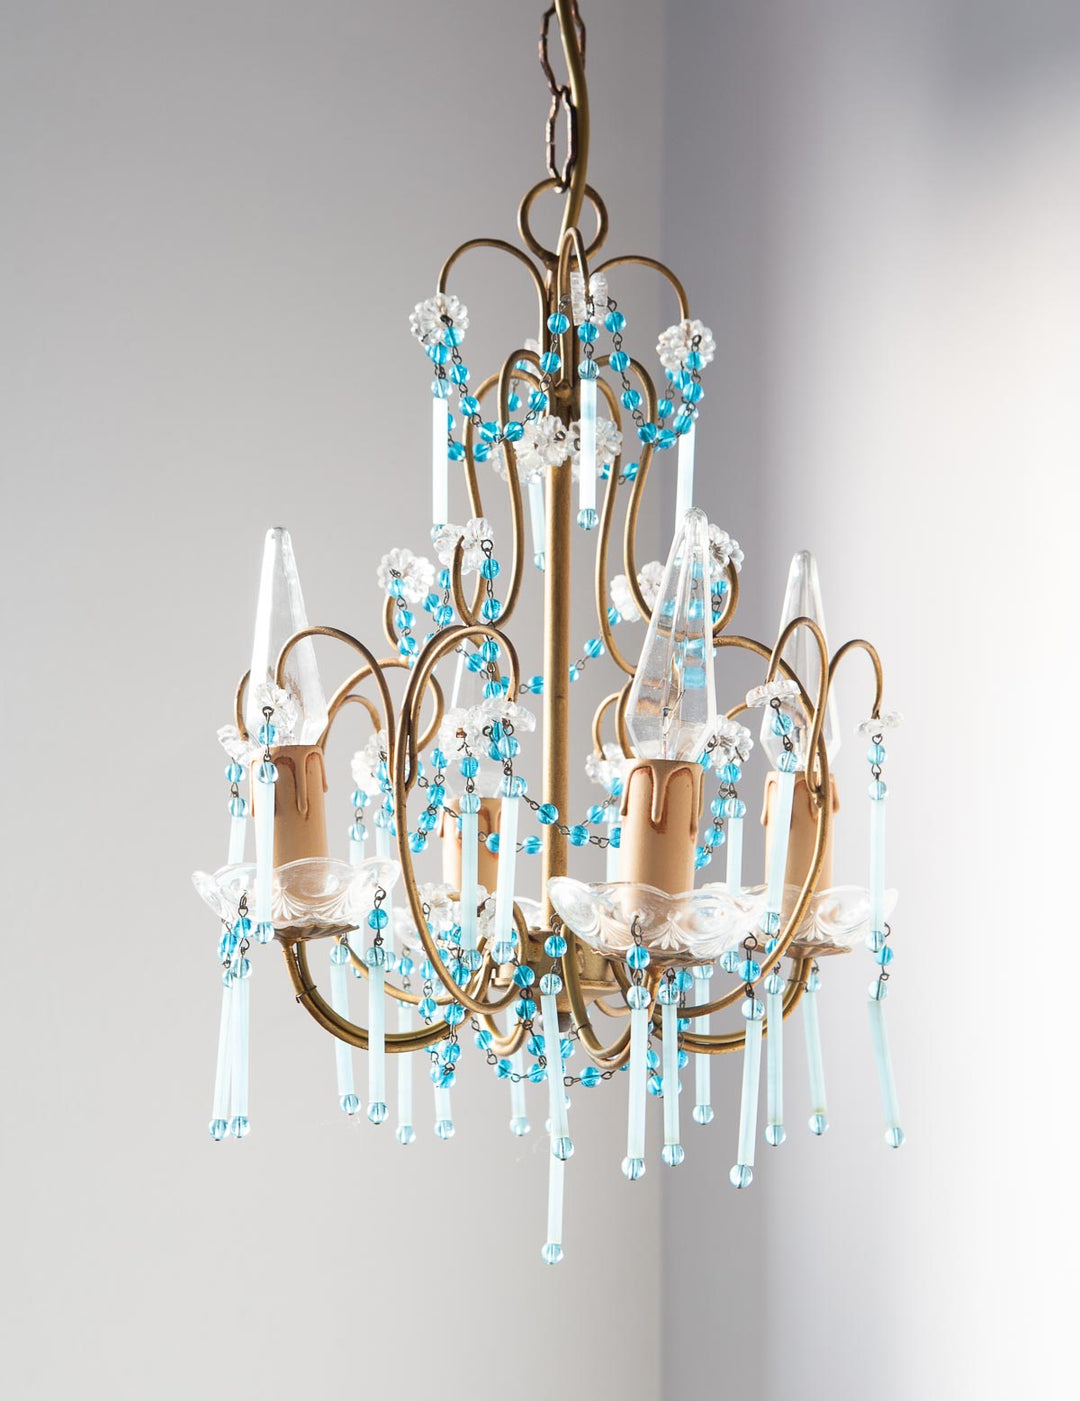 Antigua lampara de araña techo italiana dorada y cristales antique italian chandelier cristales opalina azul blue opaline glass